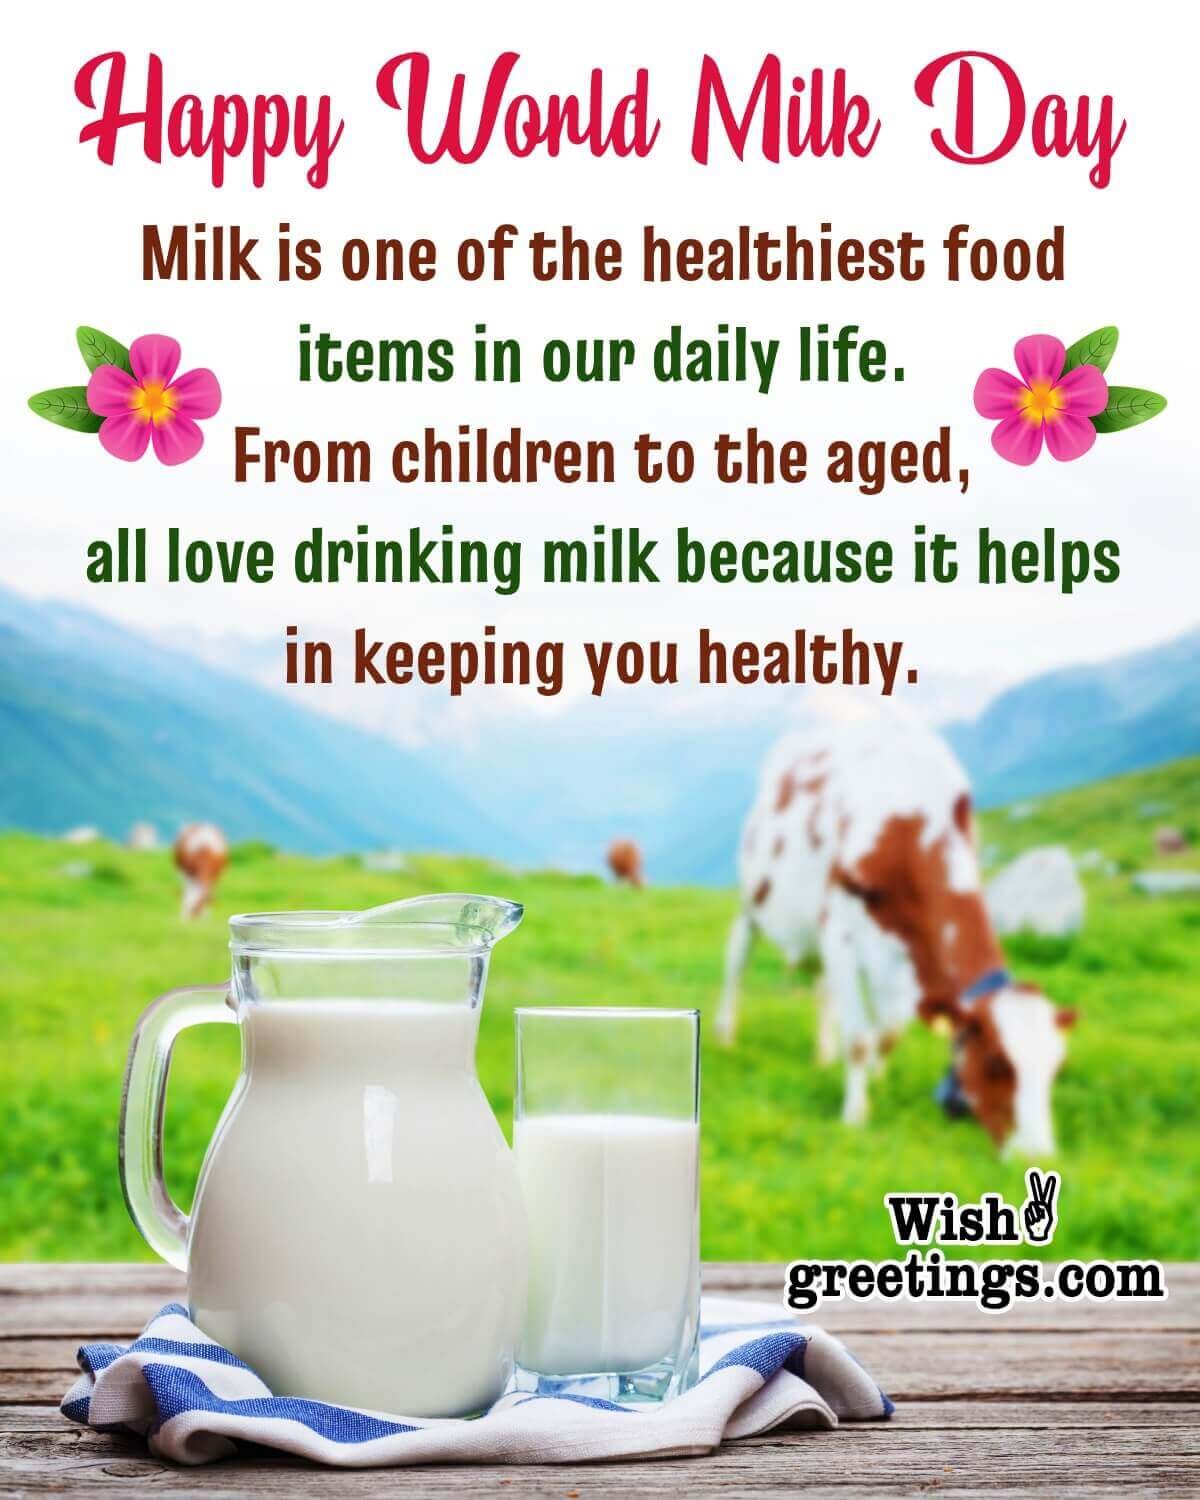 Happy World Milk Day Message Photo